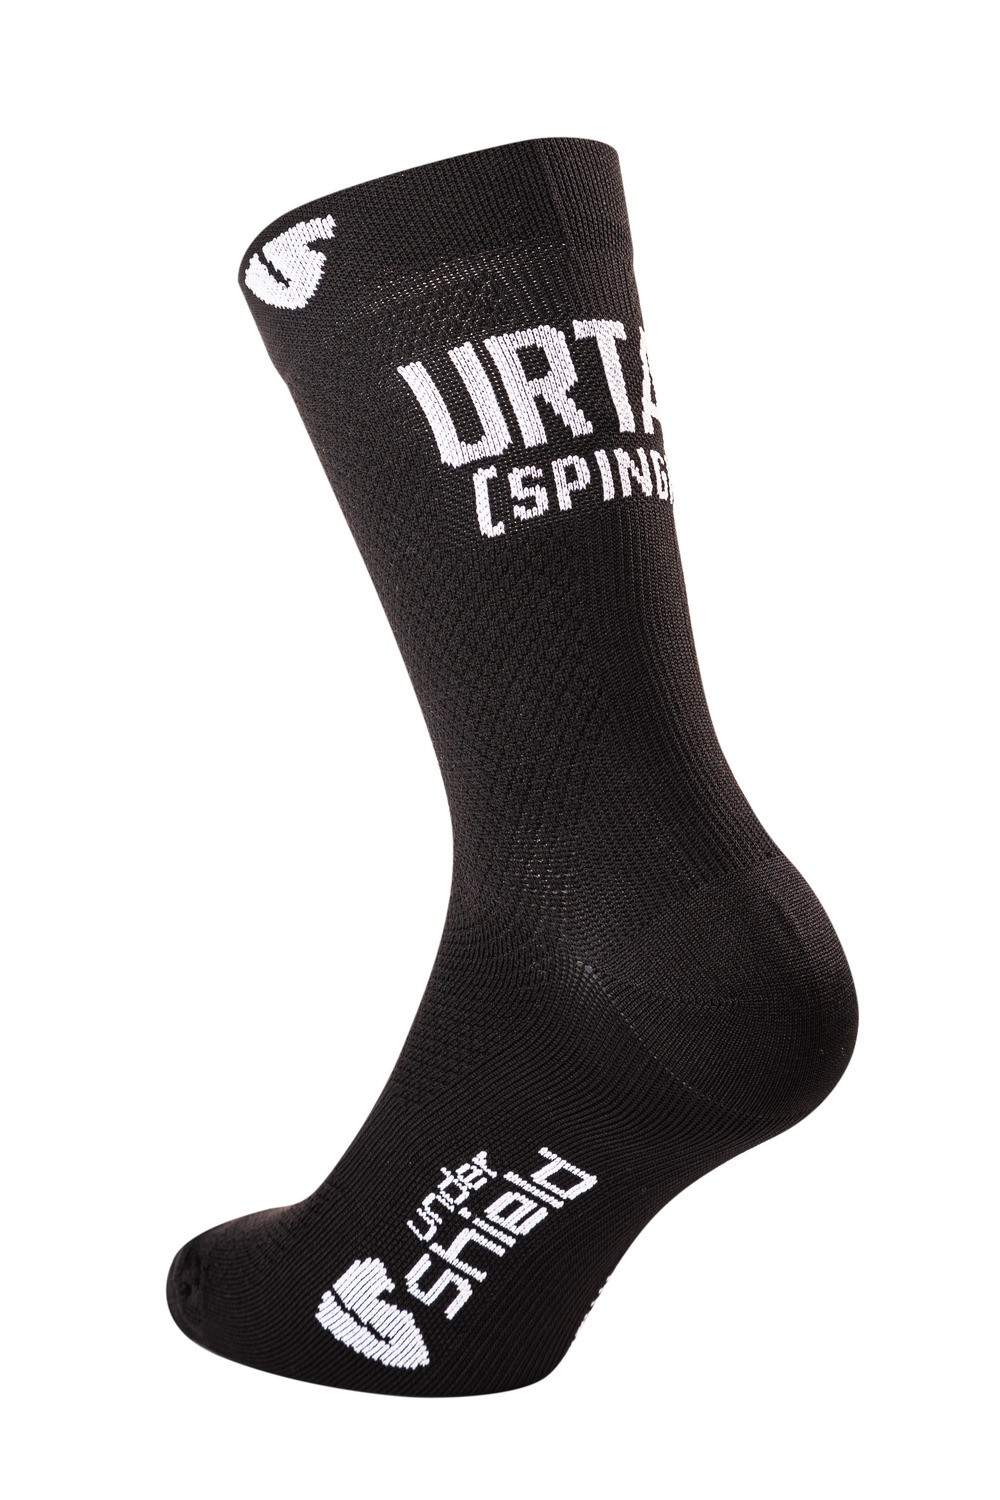 ponožky URTA, UNDERSHIELD (černá)